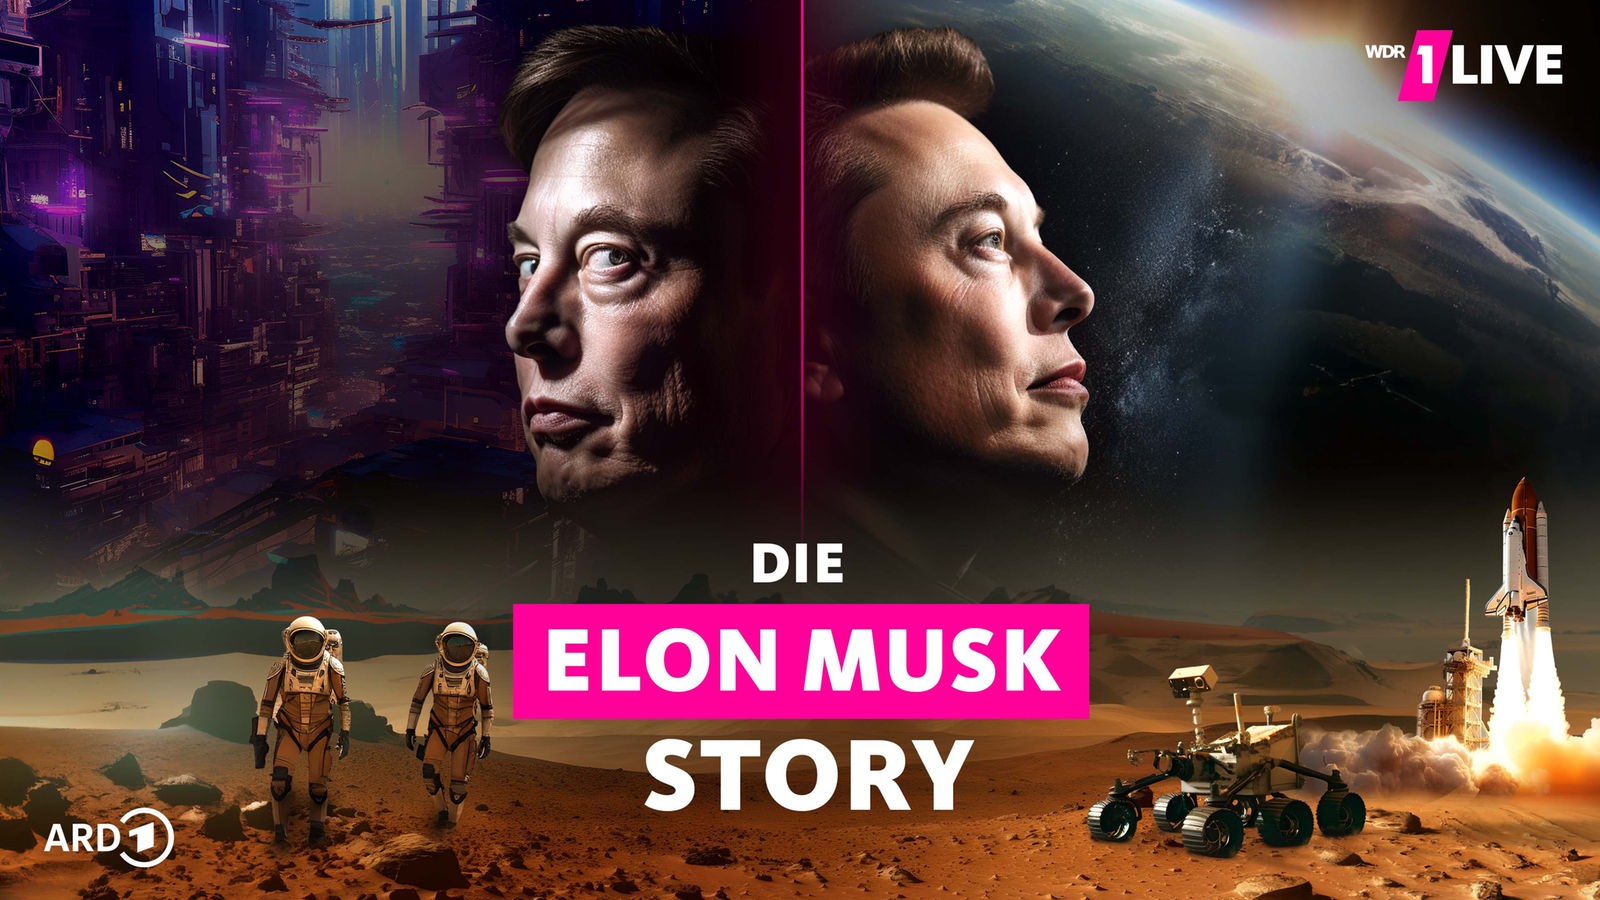 Die Elon Musk Story